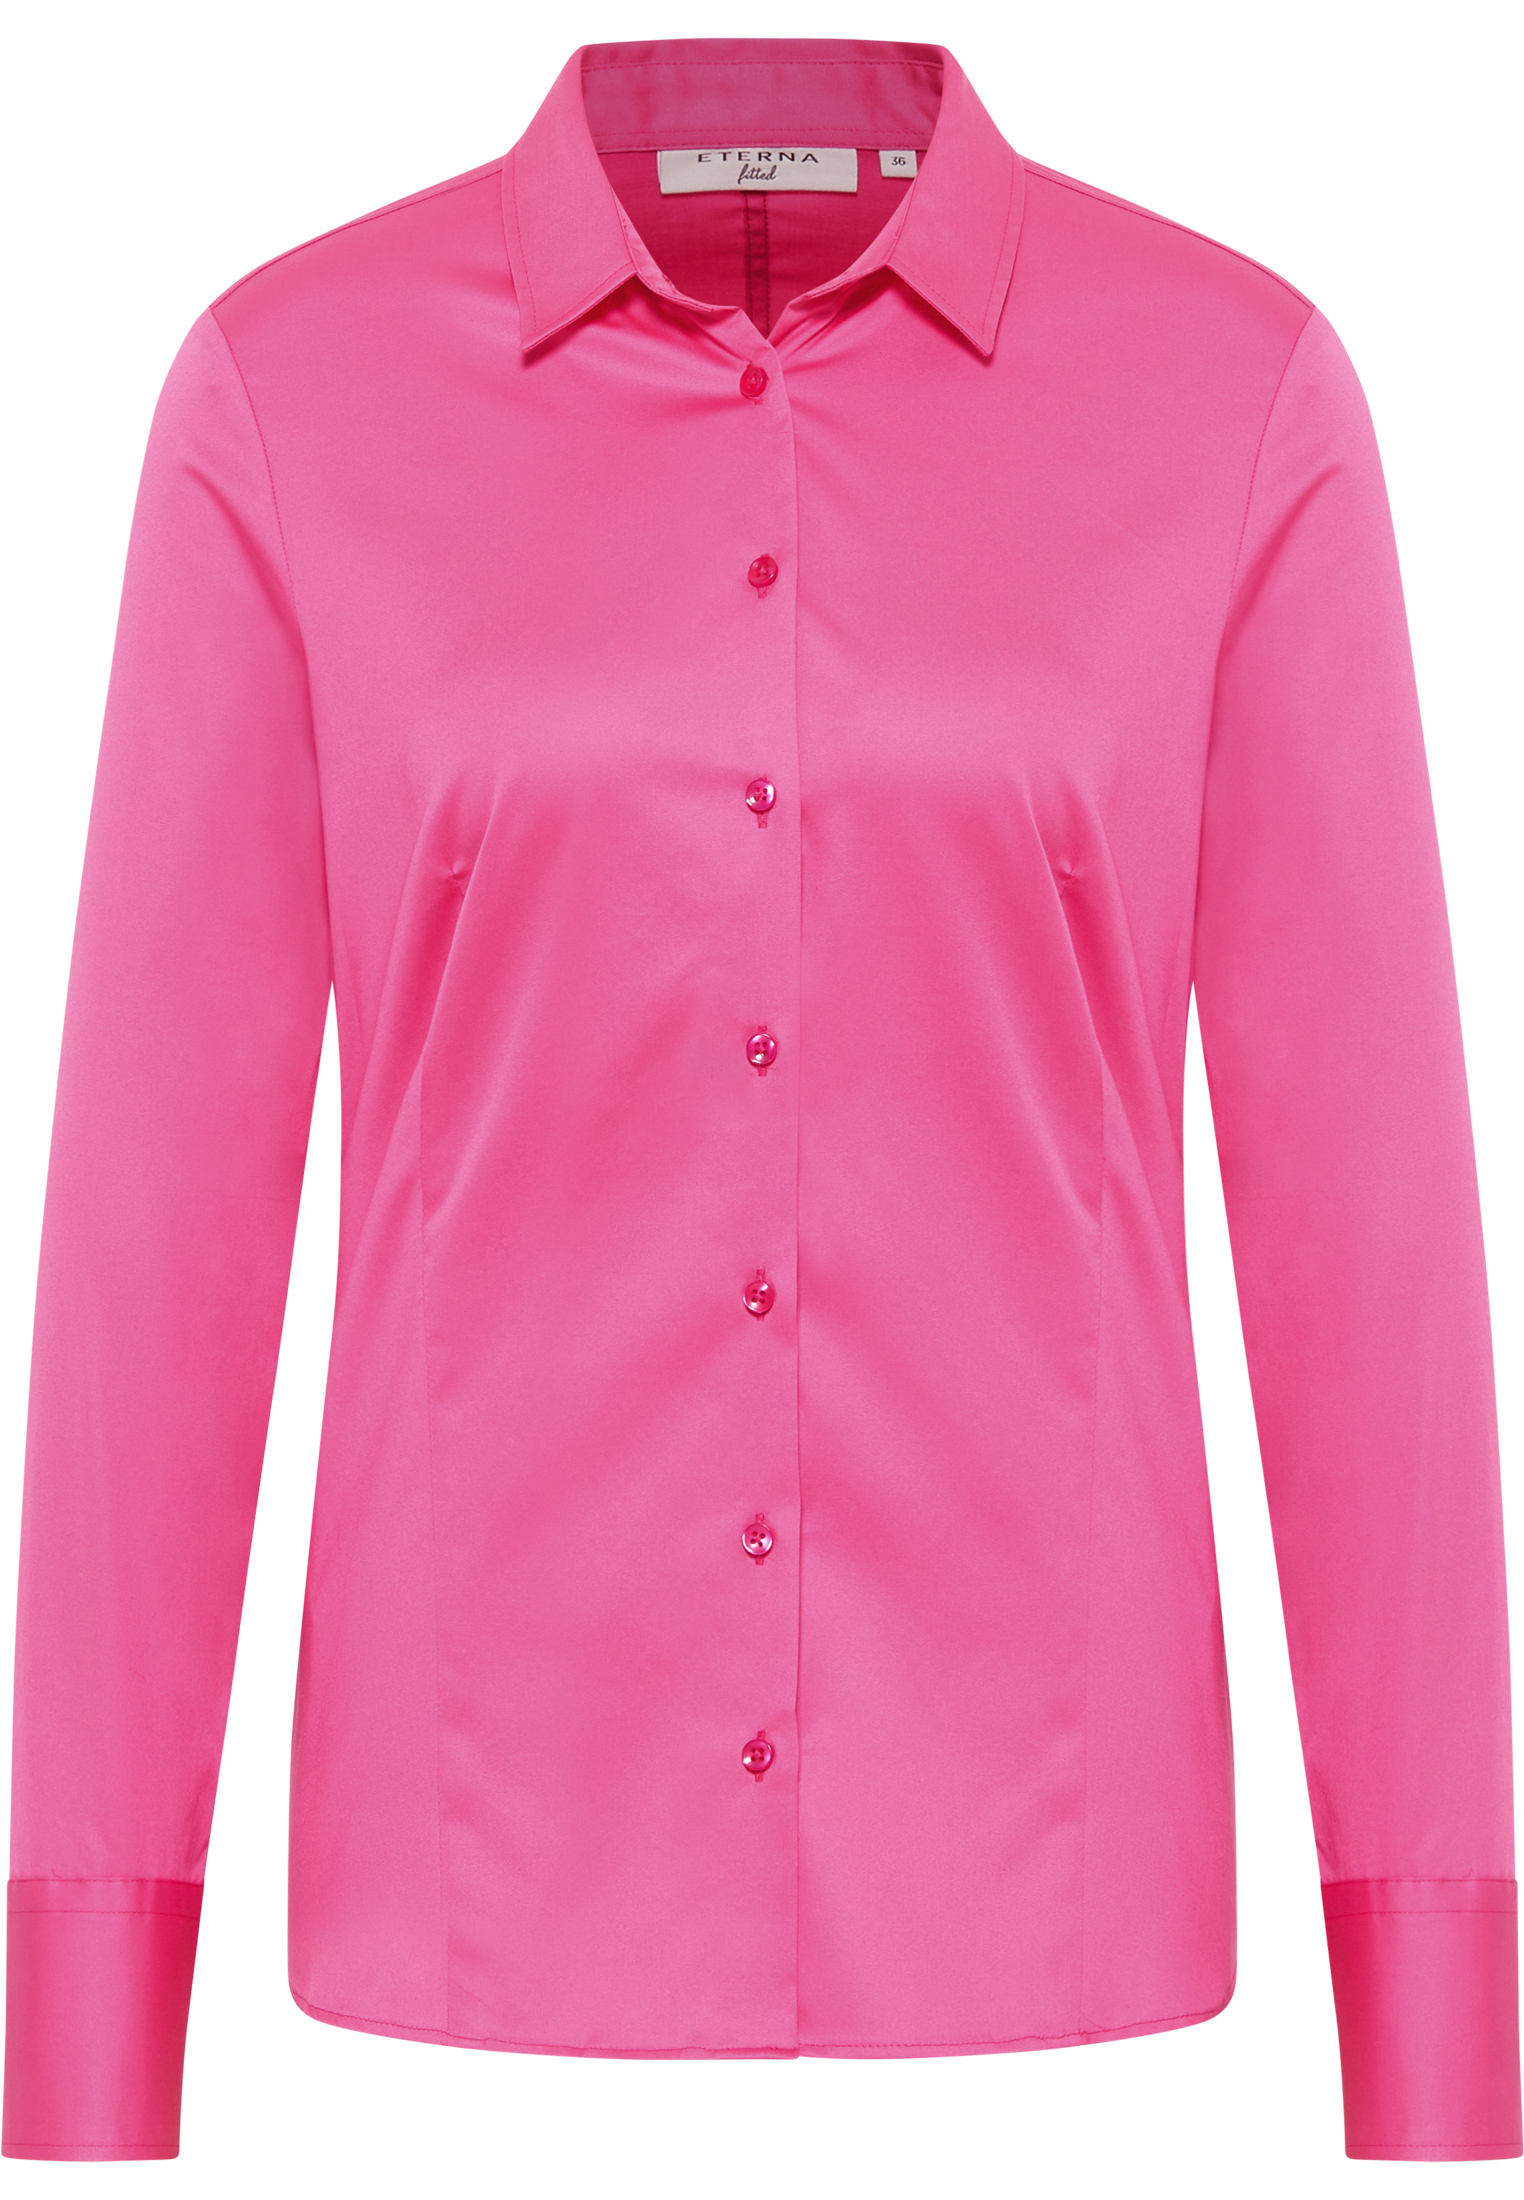 Satin Shirt Bluse in pink unifarben | pink | 36 | Langarm |  2BL04012-15-21-36-1/1